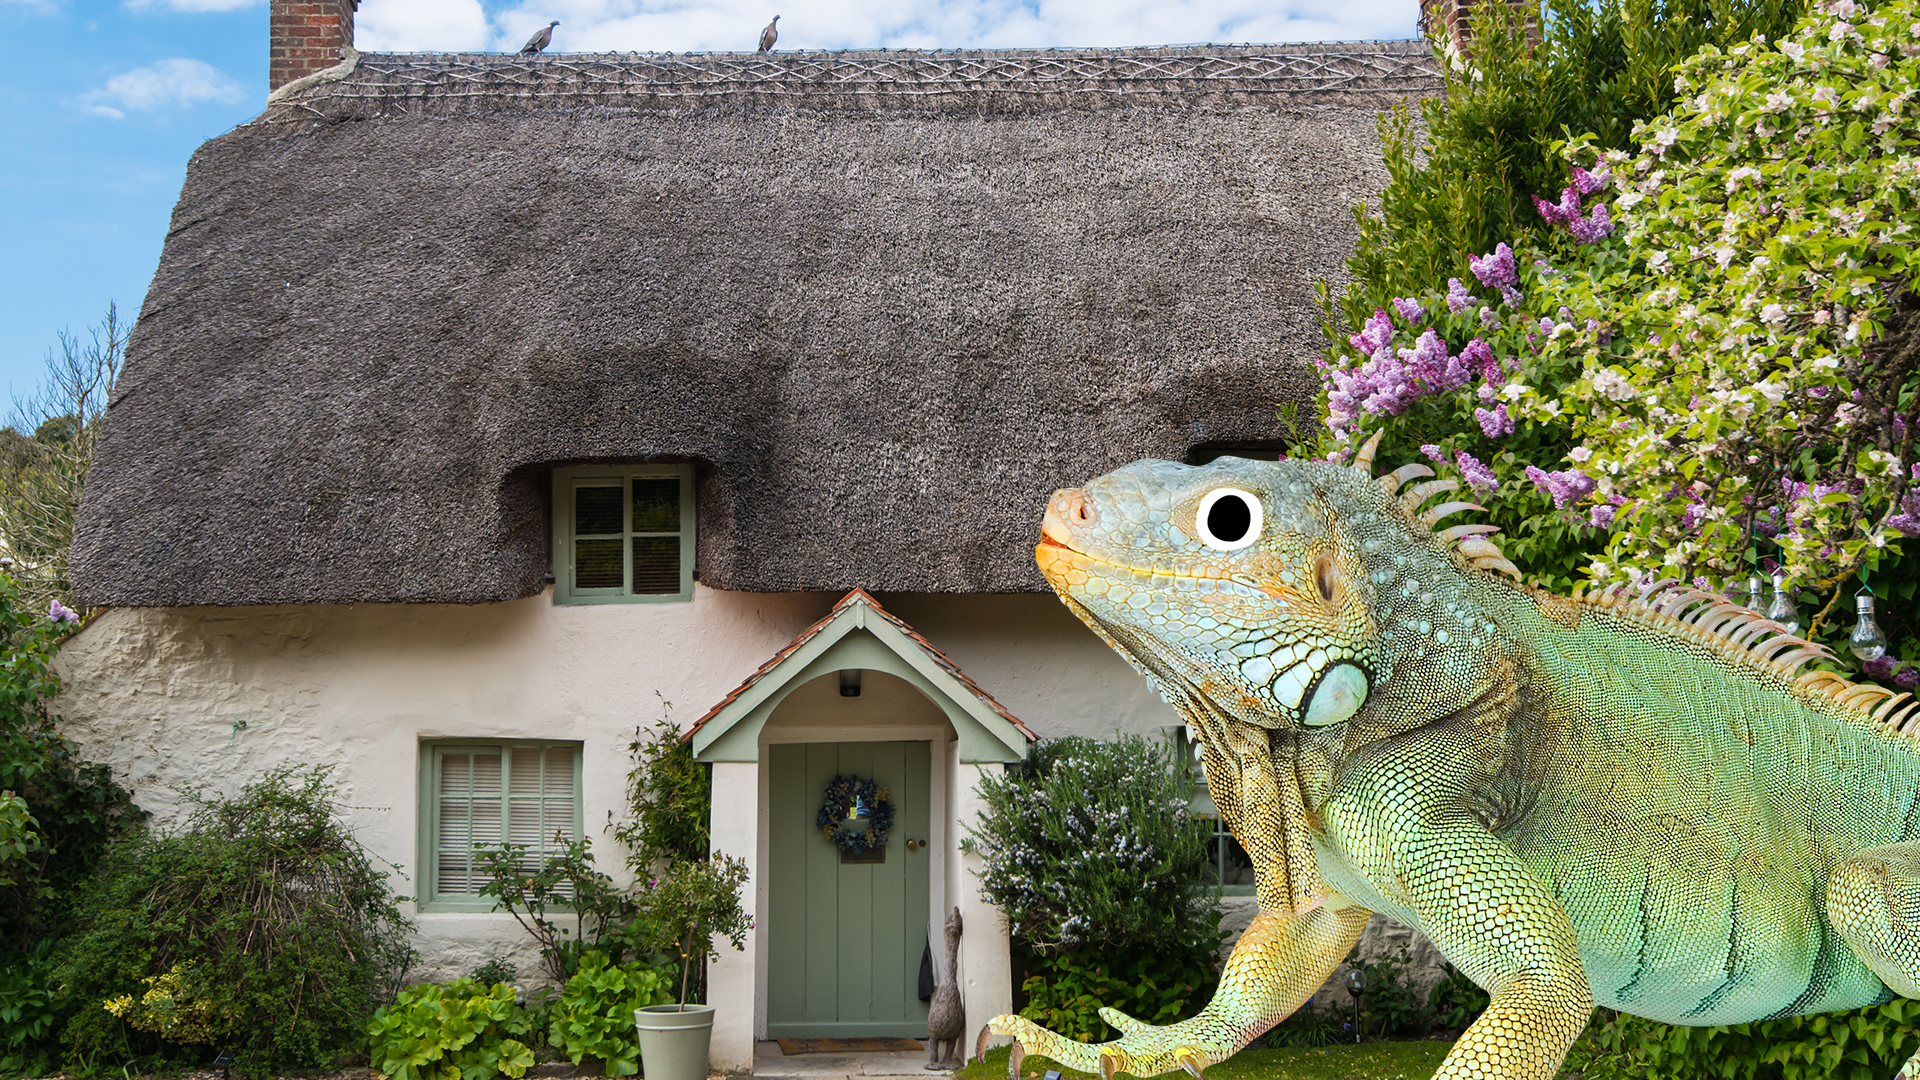 A cottage and a Beano iguana